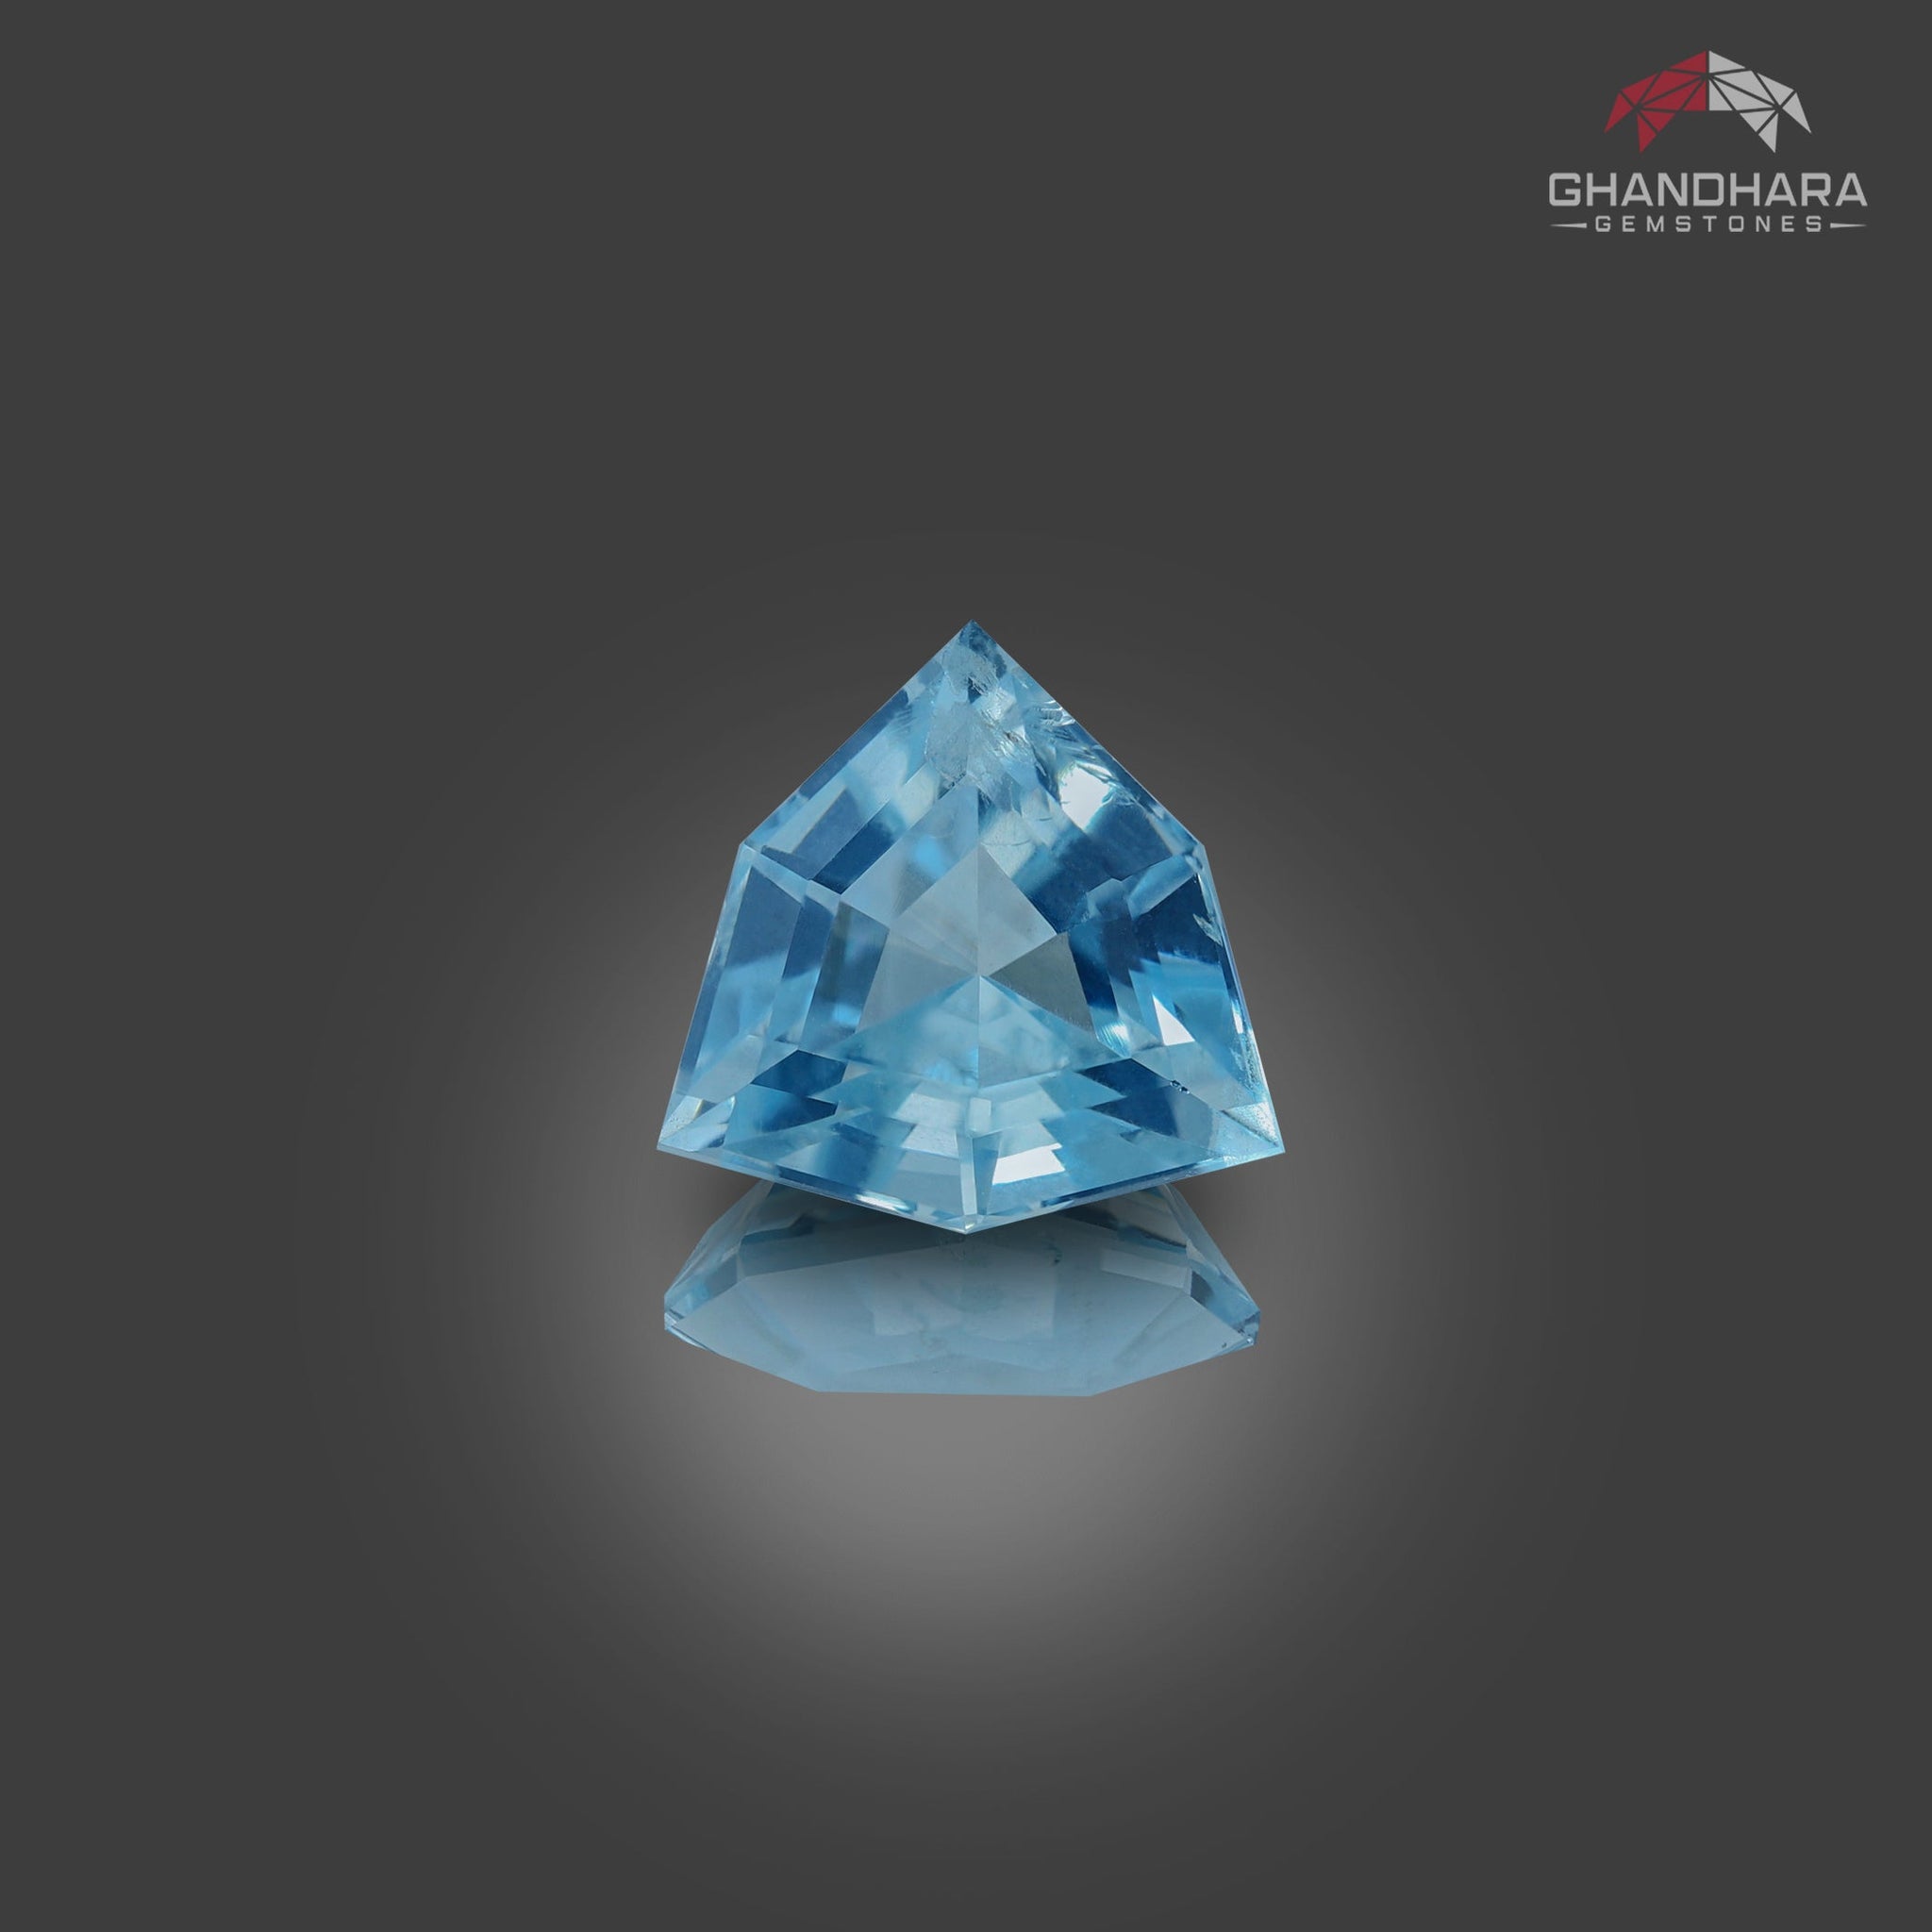 Buy Aquamarine gemstones at Best Price